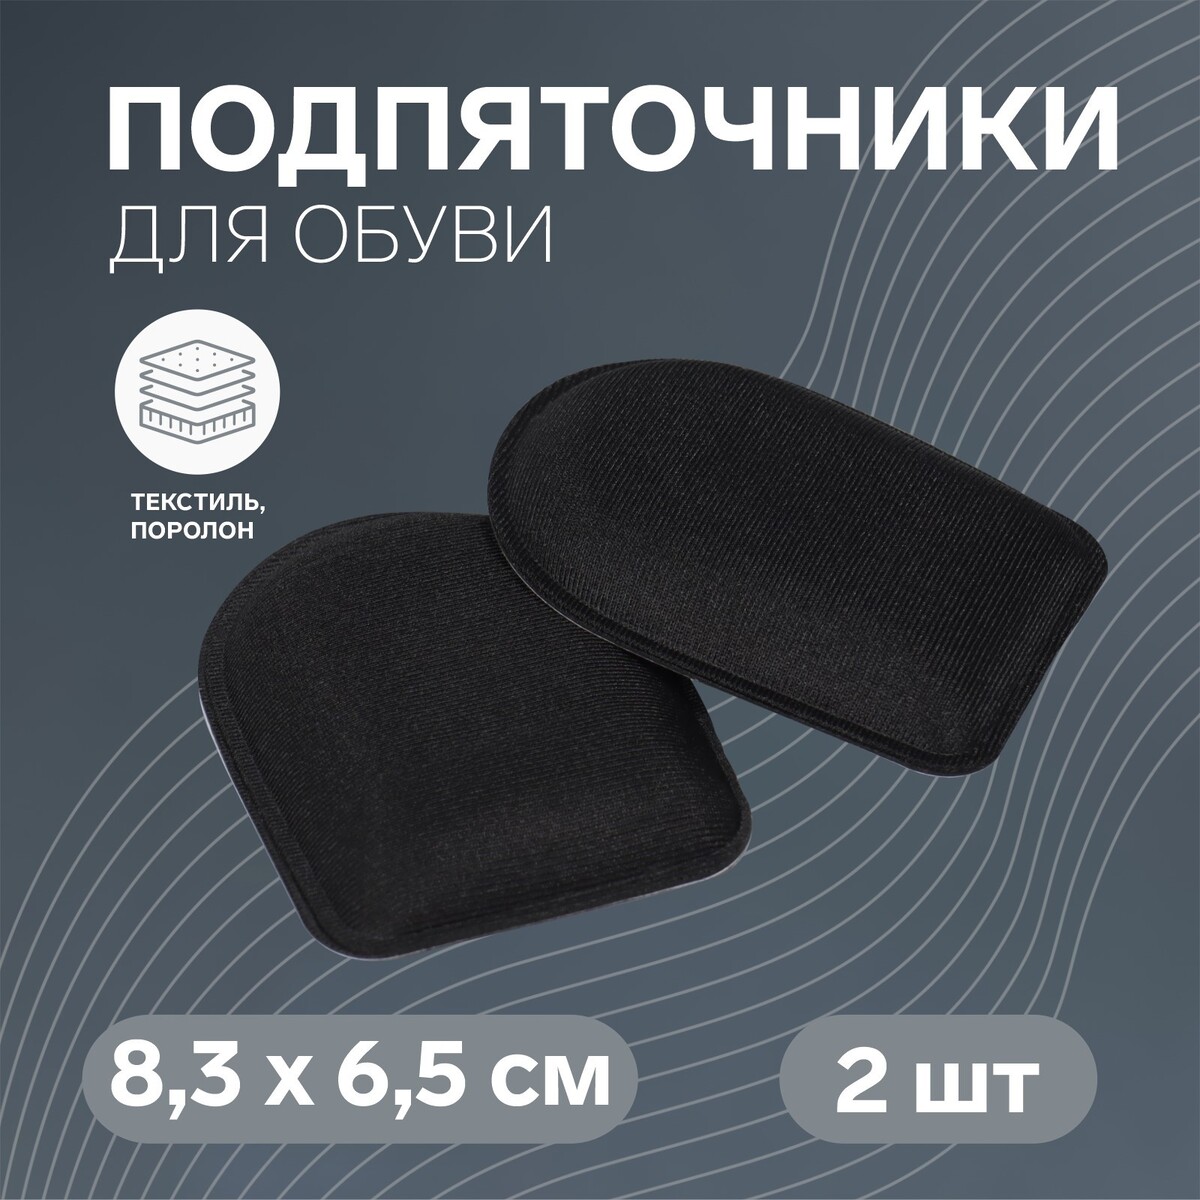 Подпяточники для обуви, клеевая основа, 8,3 × 6,5 см, пара, цвет черный